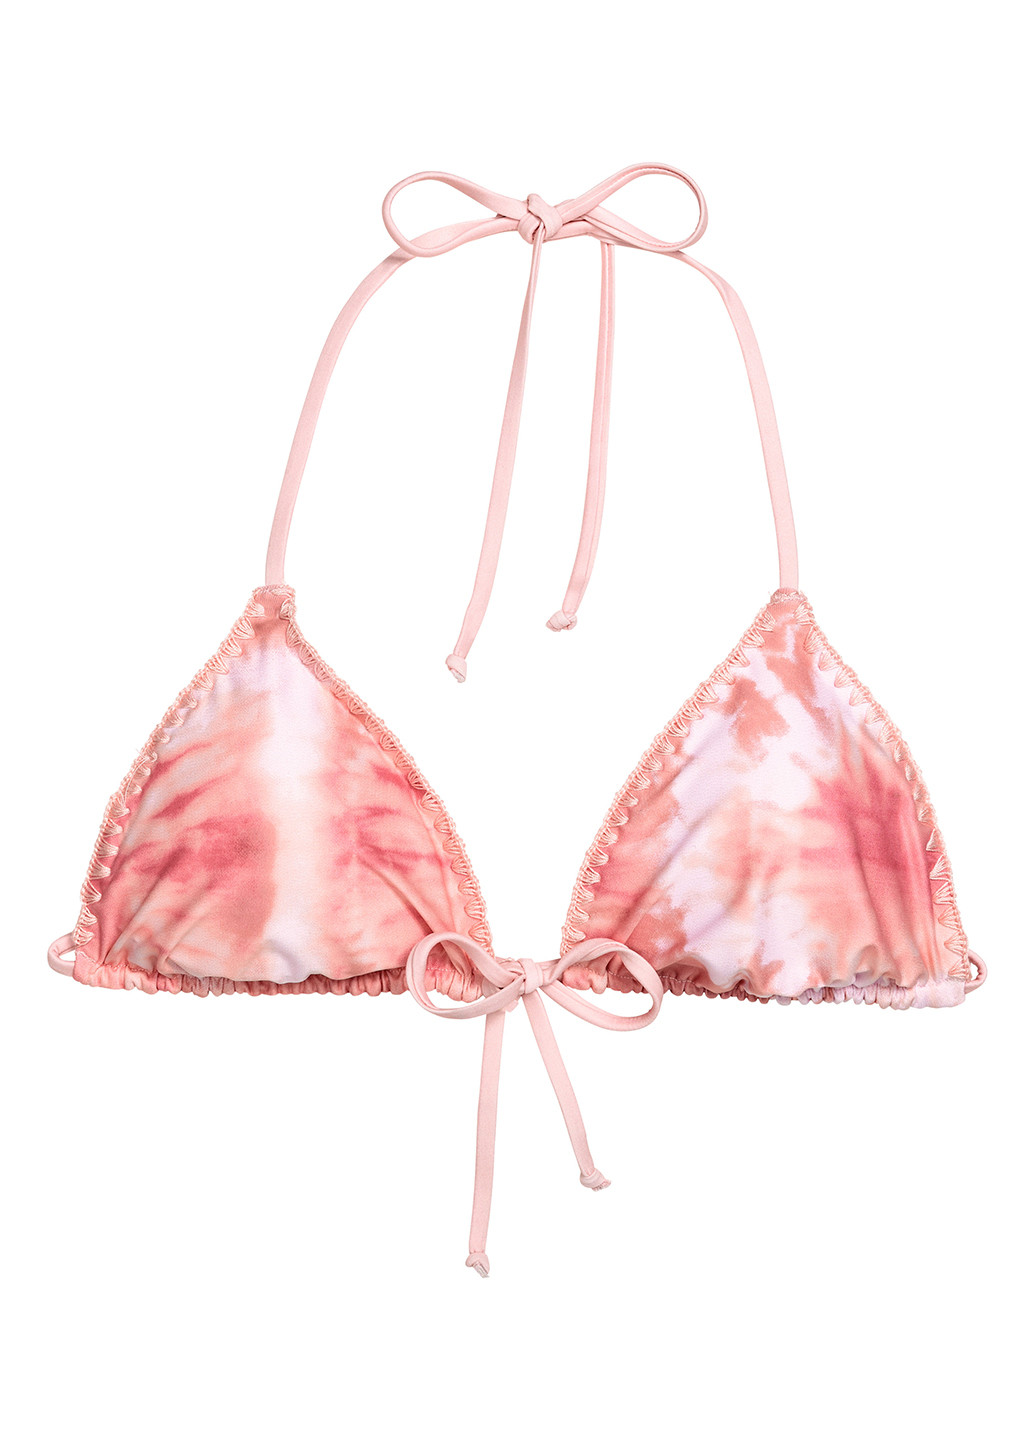 Купальный лиф H&M бикини рисунок розовый пляжный полиэстер